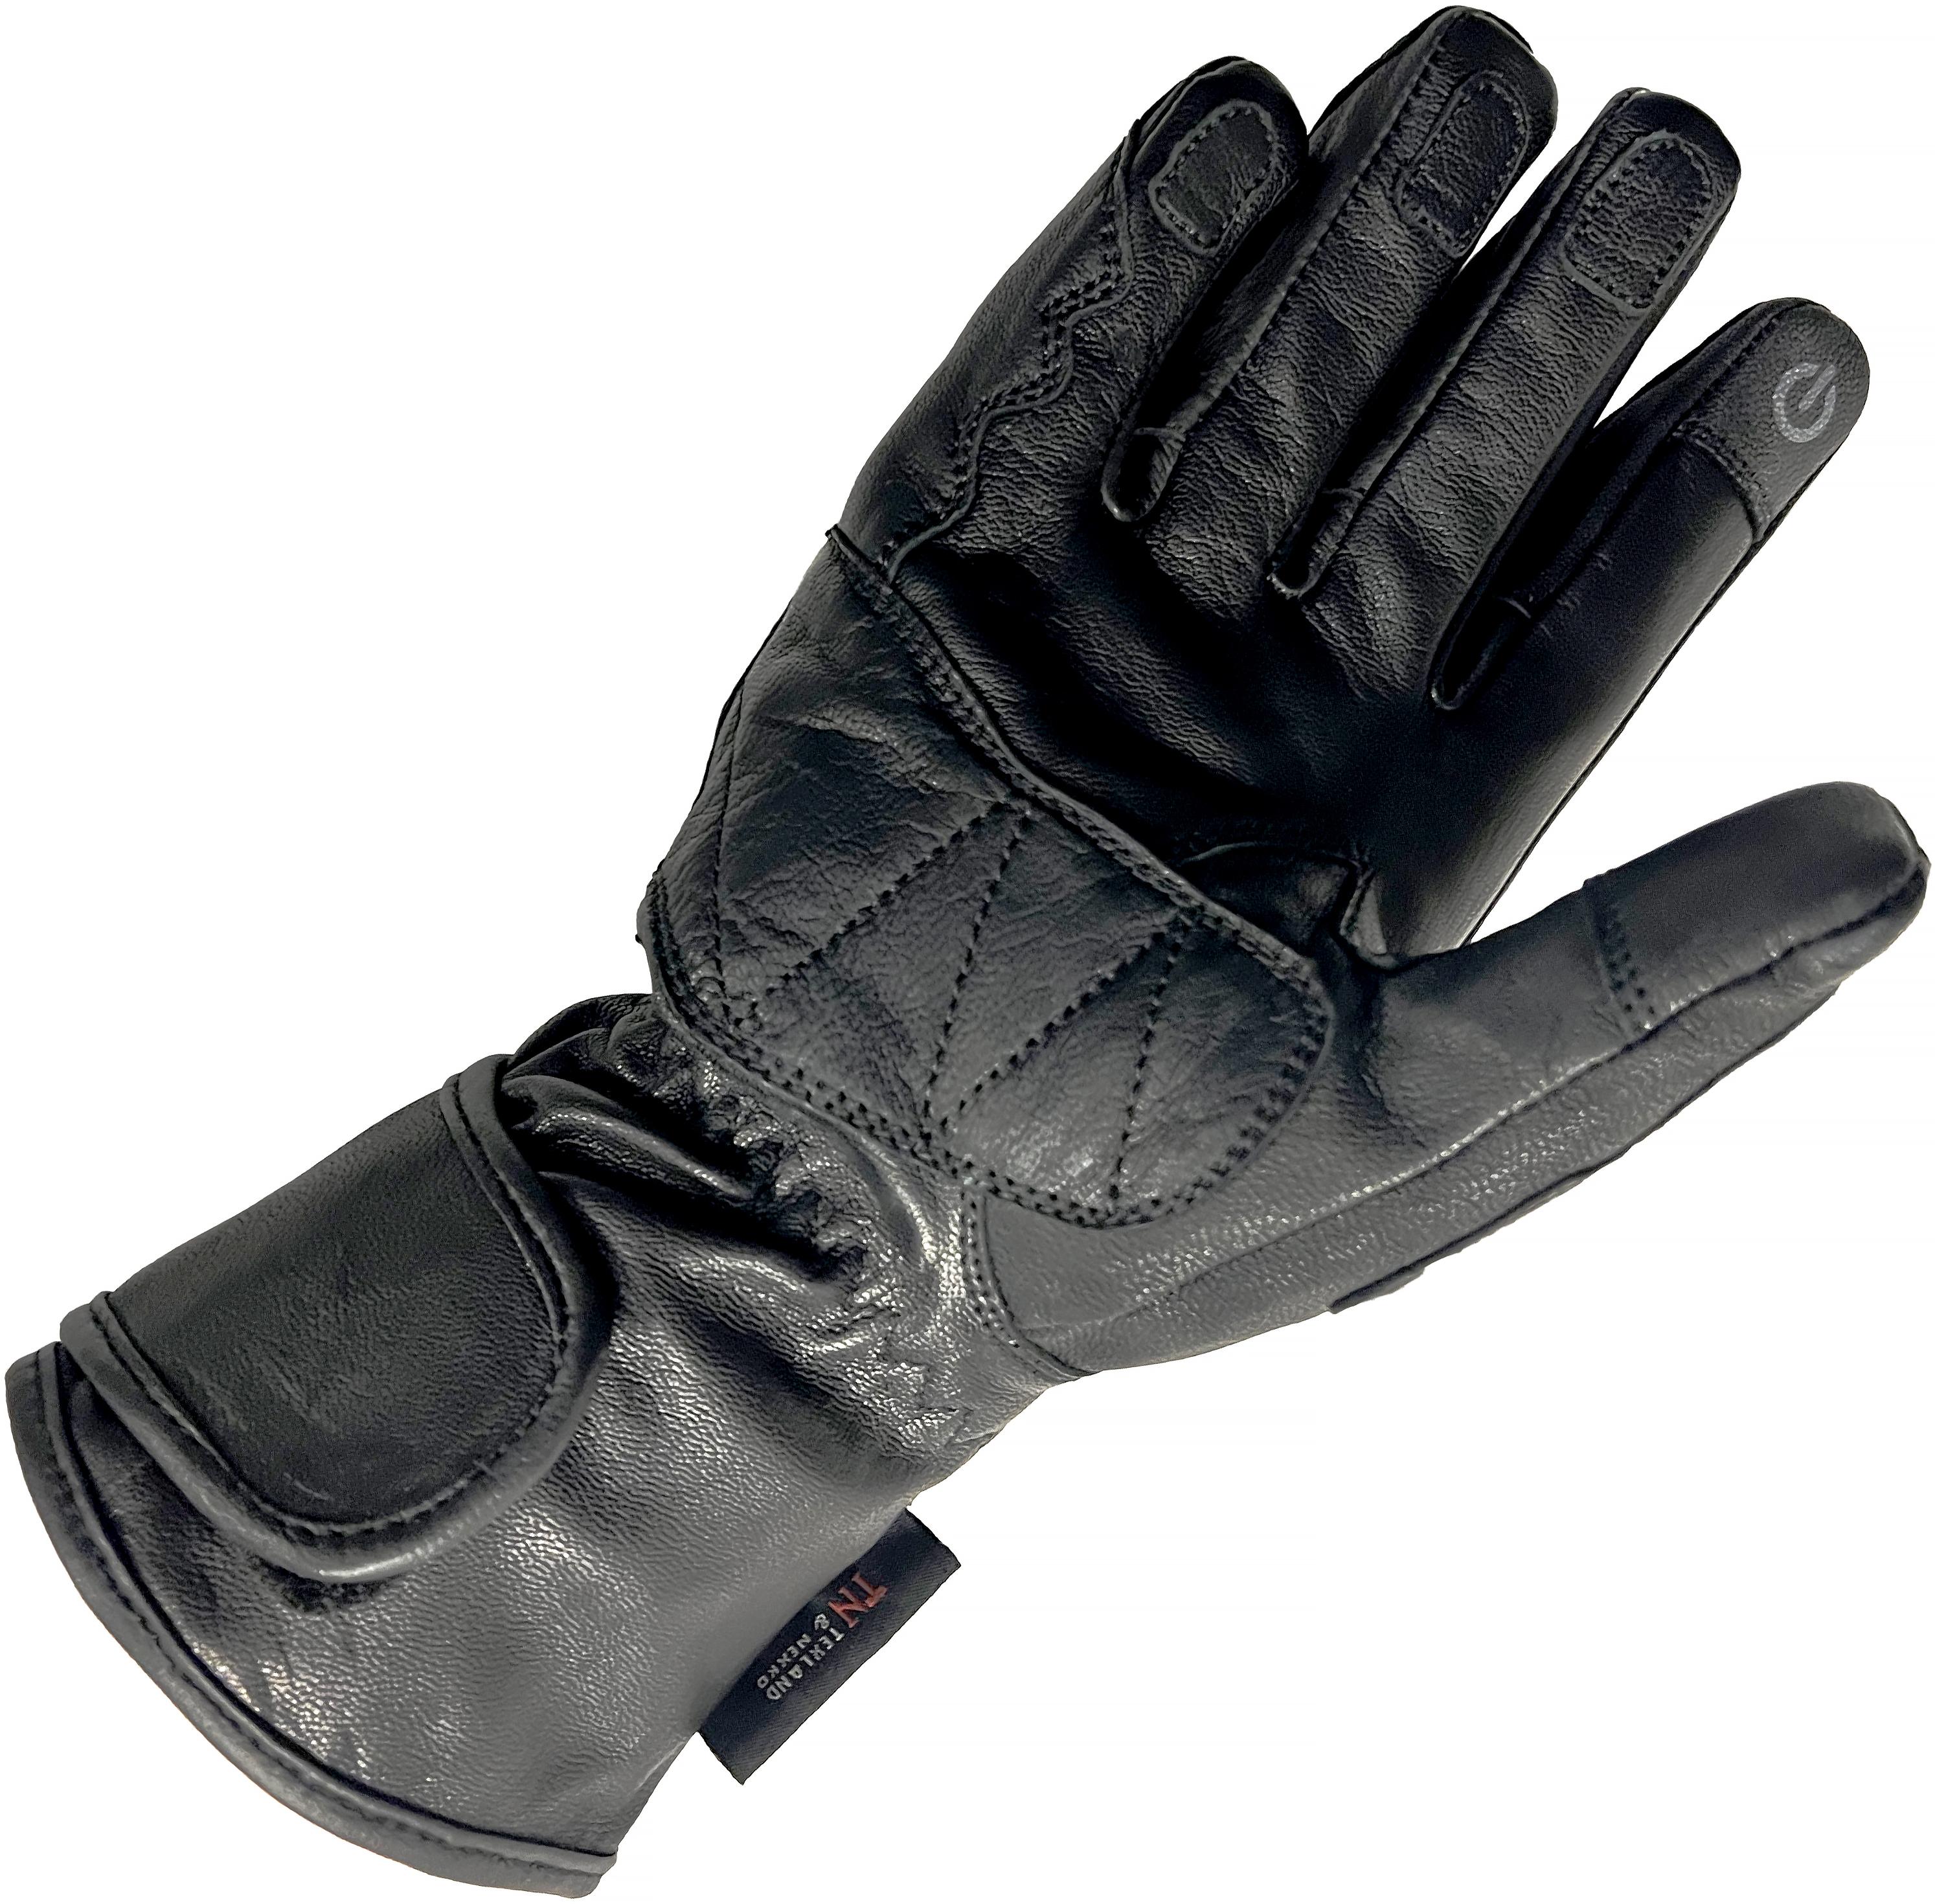 Richa Waterproof Racing Motorcycle Gloves - Black, Large